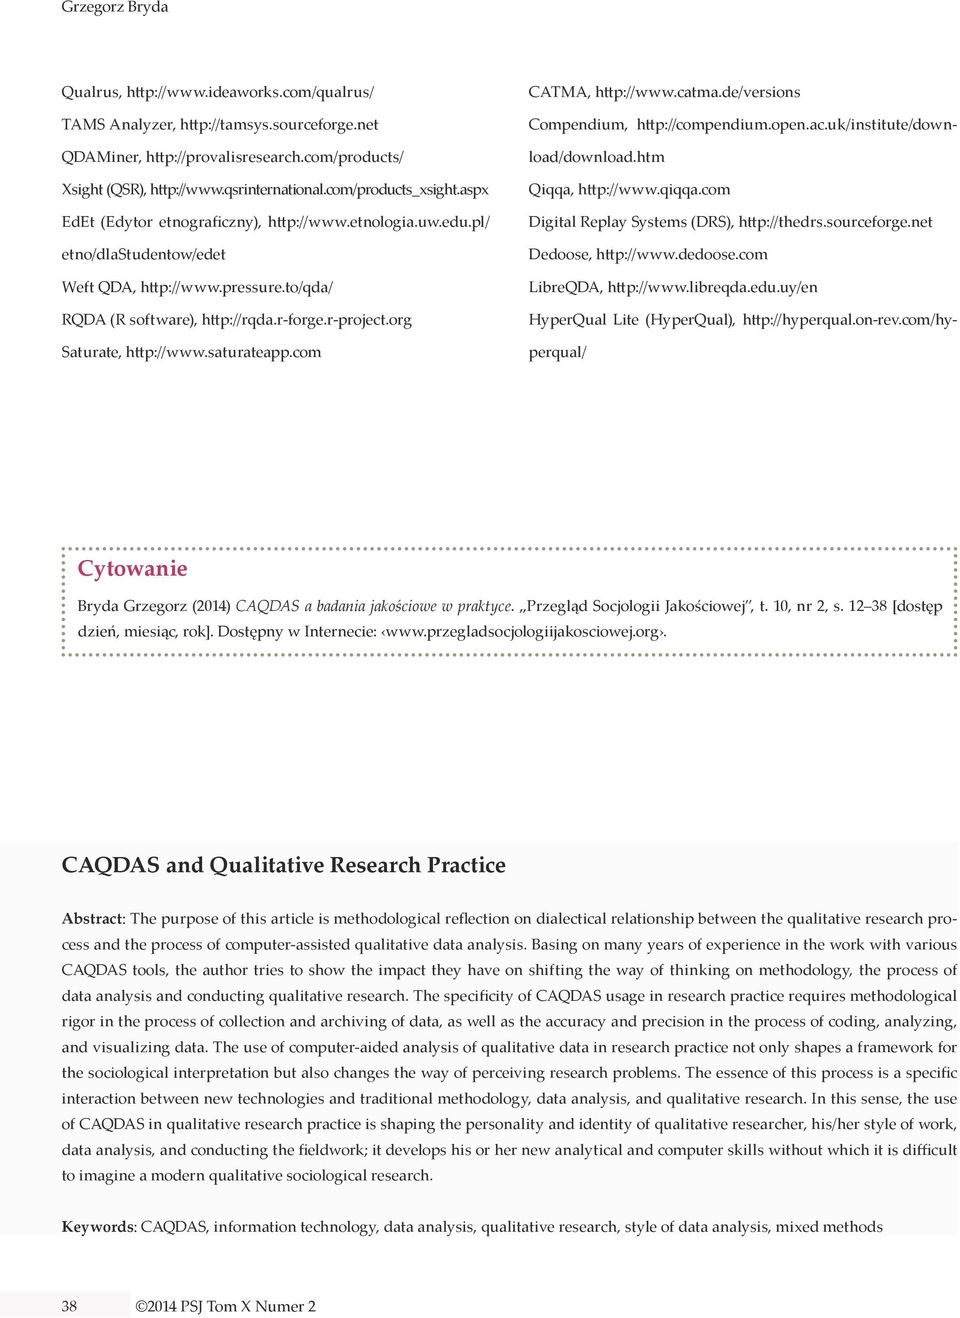 org Saturate, http://www.saturateapp.com CATMA, http://www.catma.de/versions Compendium, http://compendium.open.ac.uk/institute/download/download.htm Qiqqa, http://www.qiqqa.